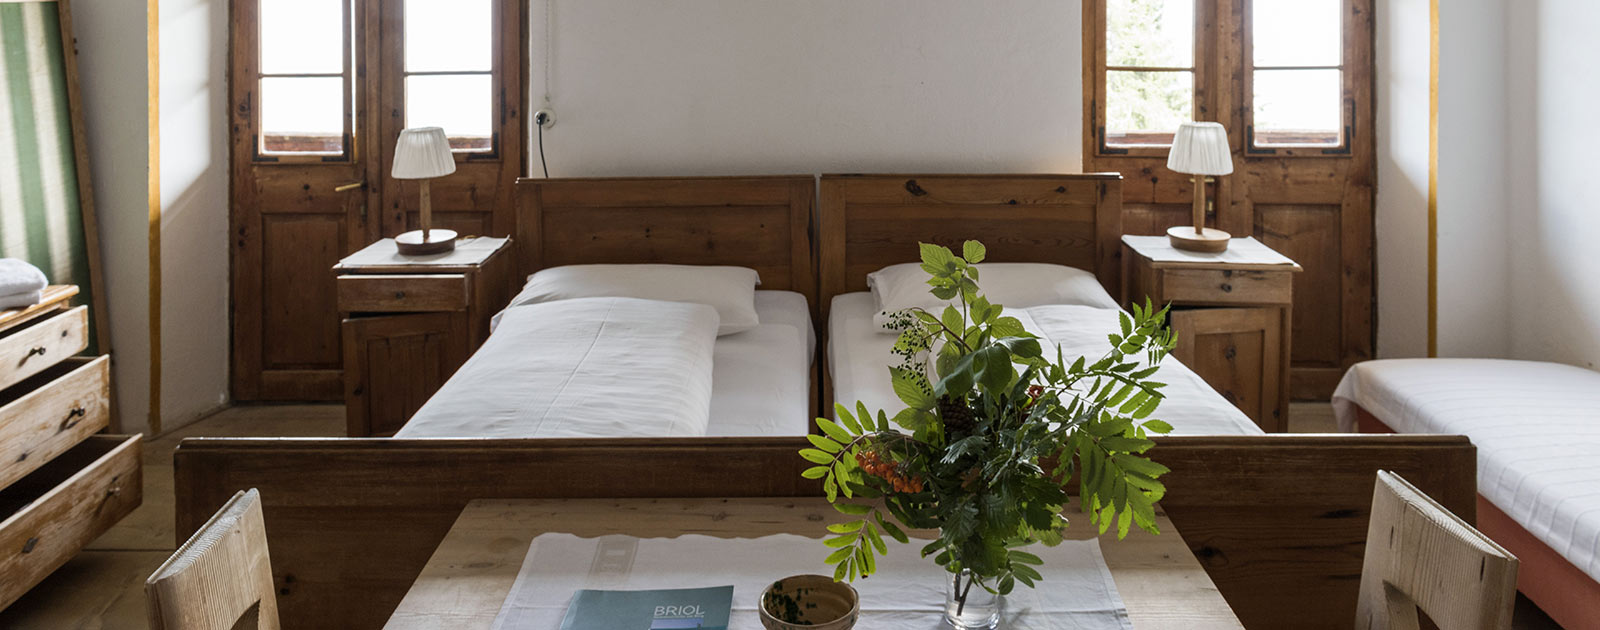 Tisch und Betten eines Zimmers des Hotels Briol in Barbian Dreikirchen